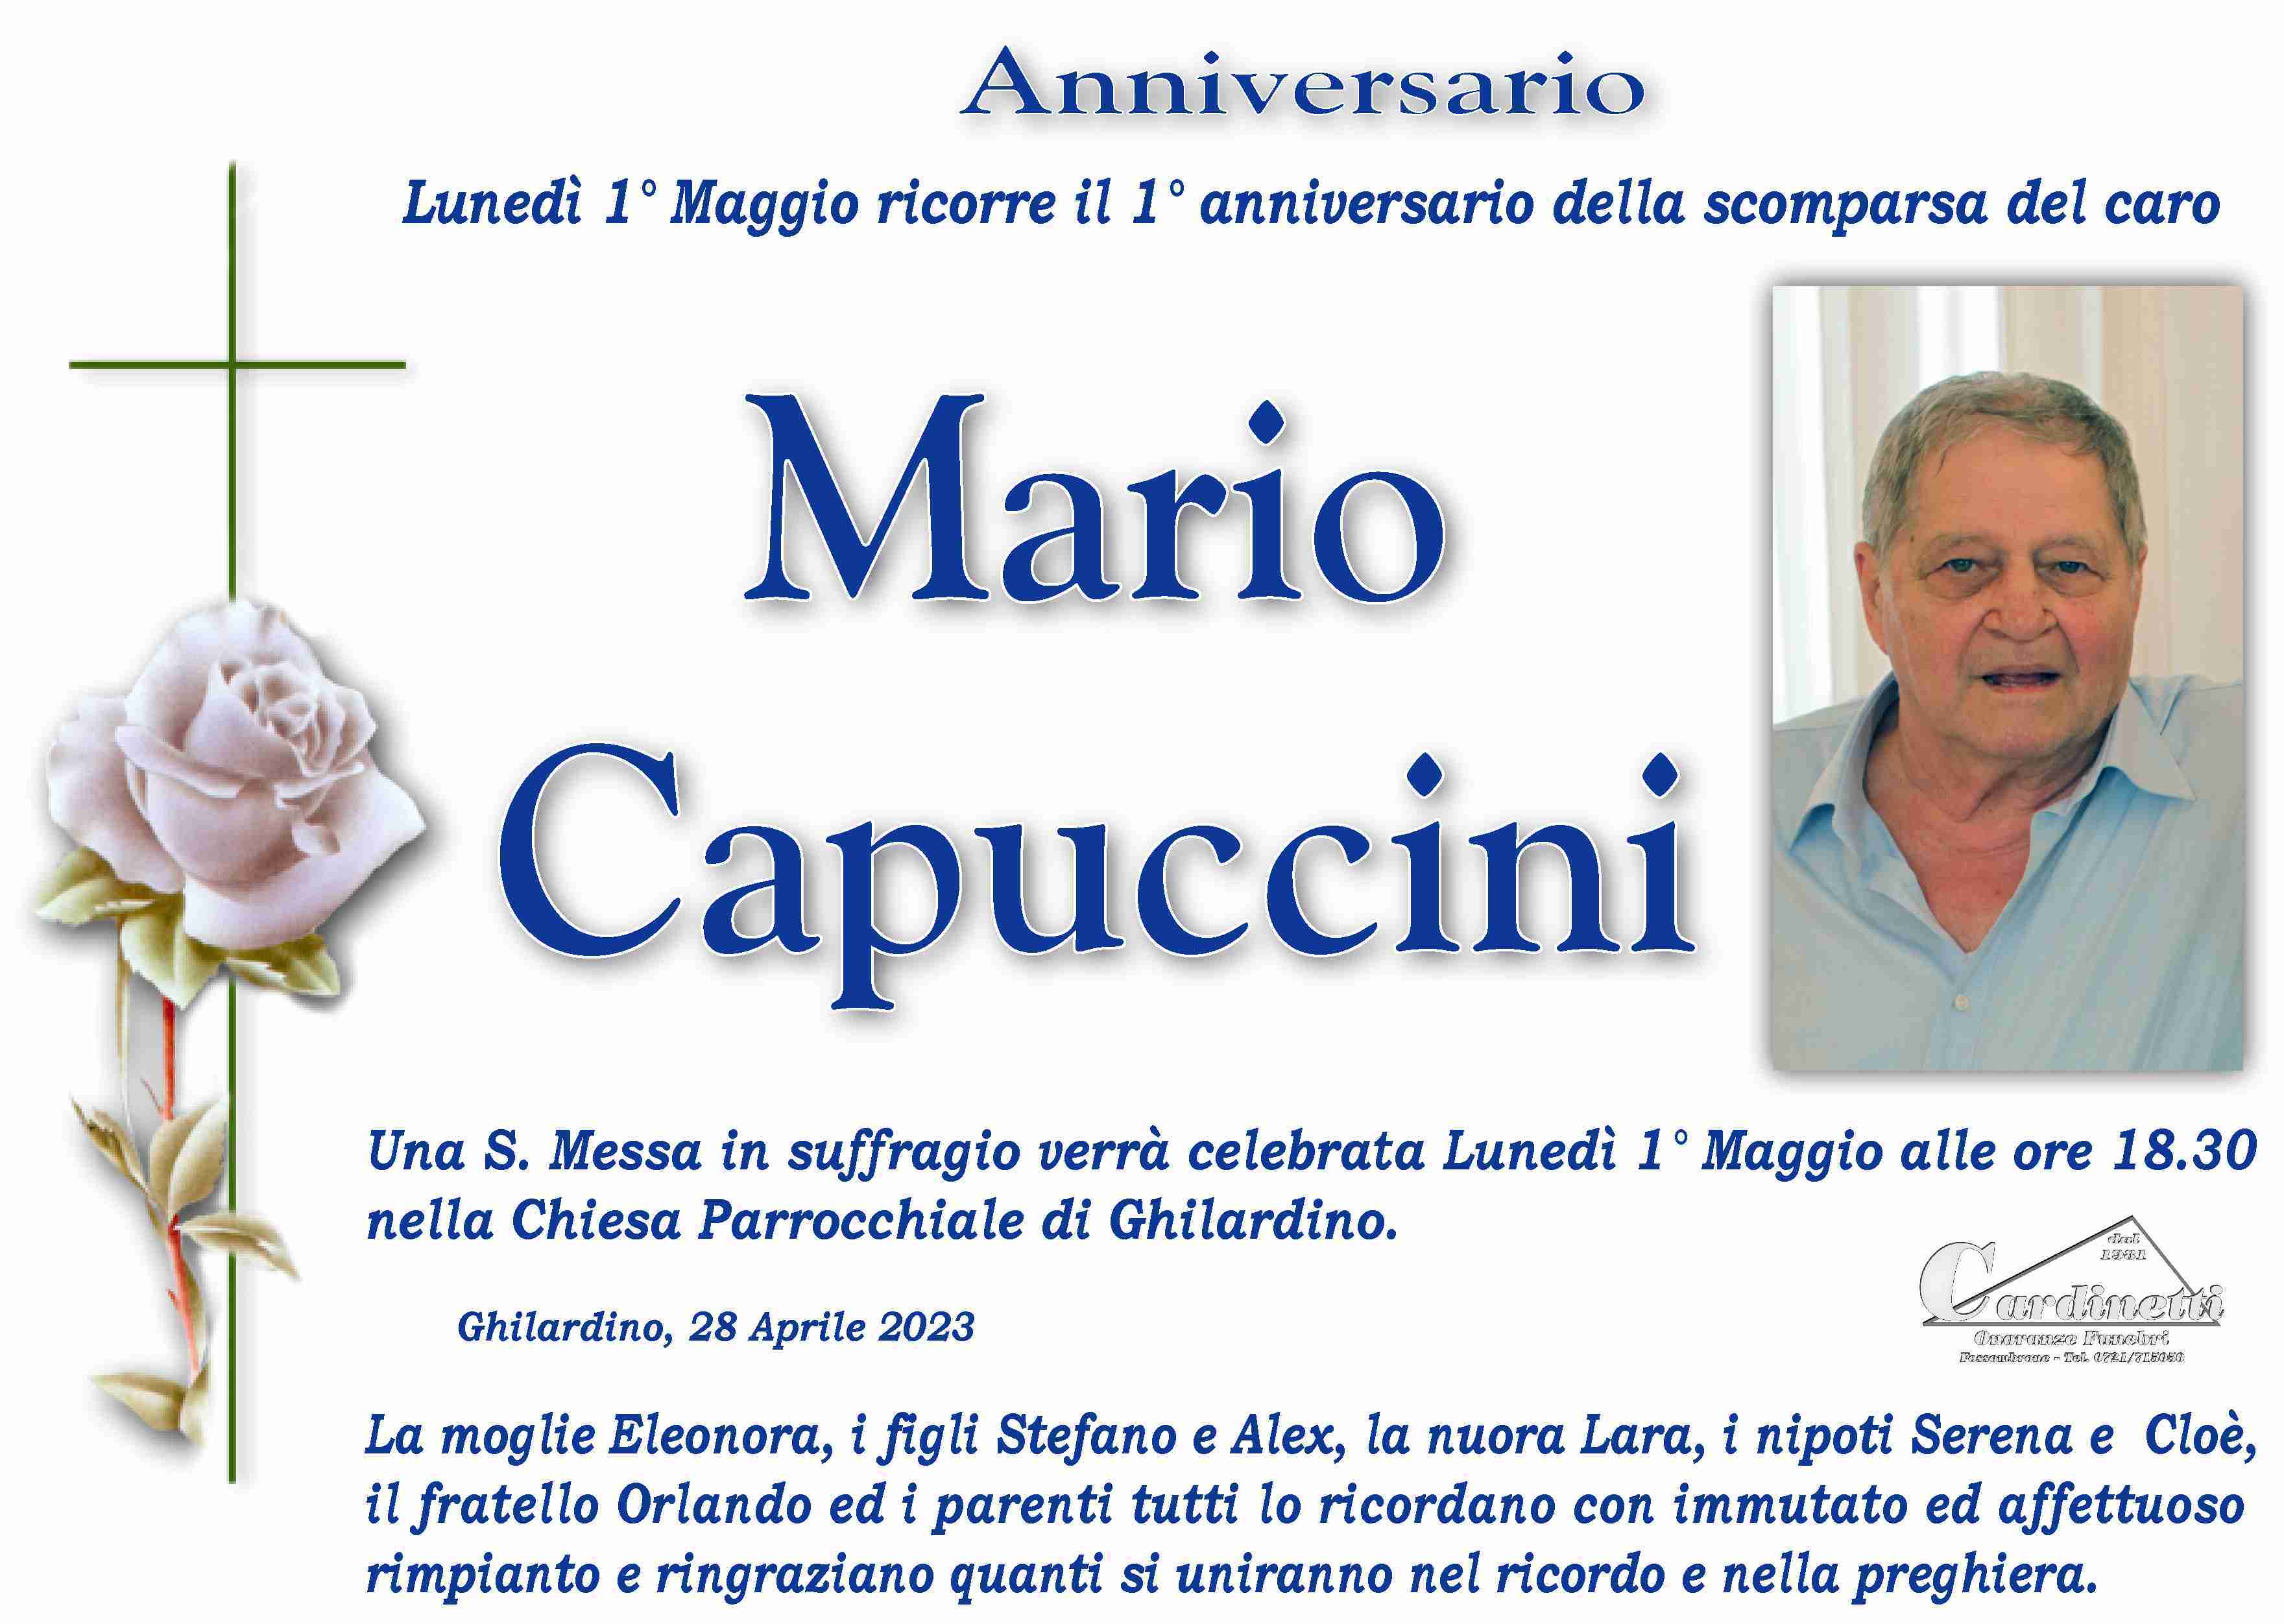 Mario Capuccini